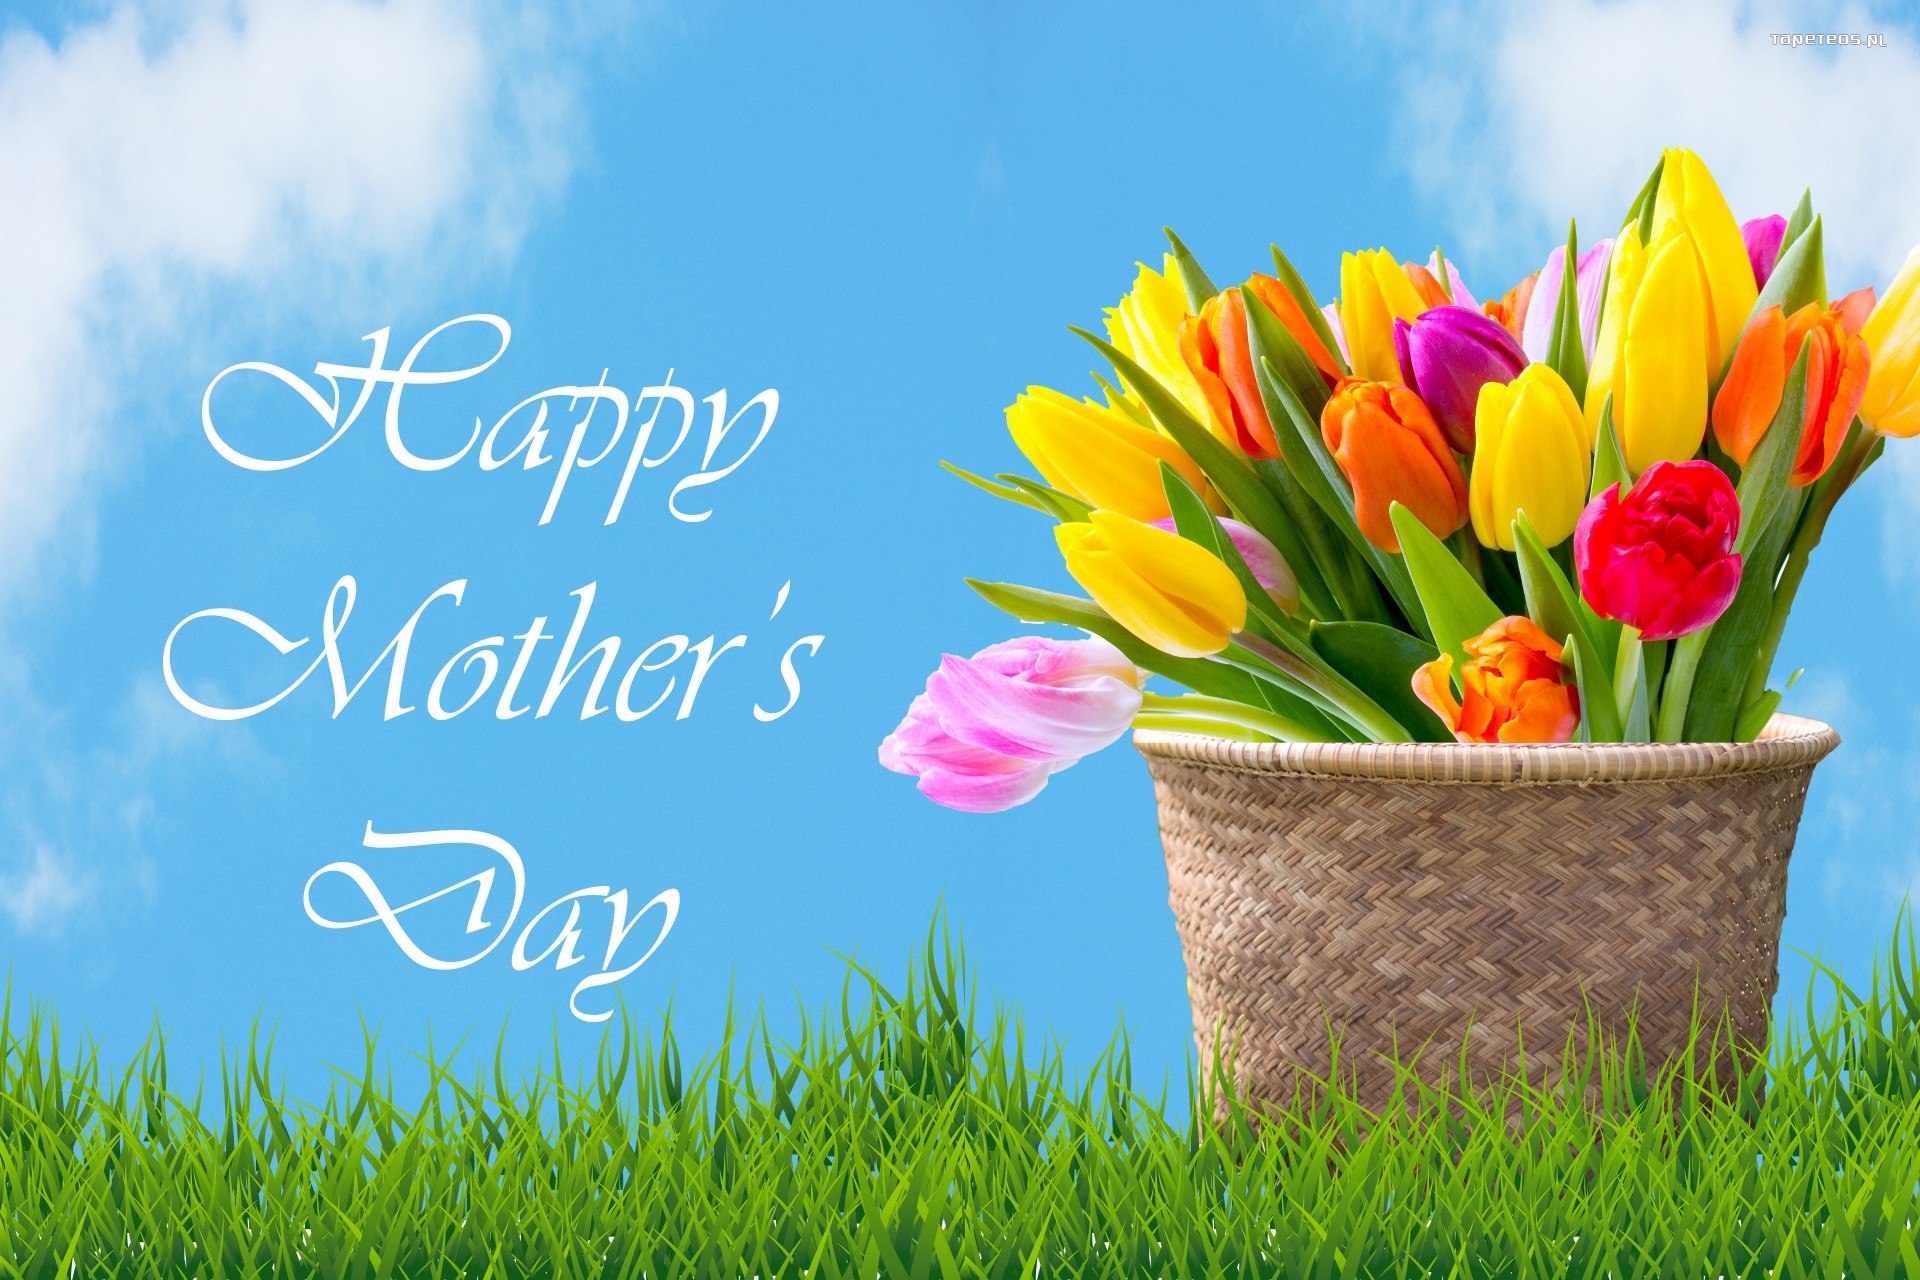 Dzien Matki 053 Kosz, Kwiaty, Tulipany, Happy Mothers Day